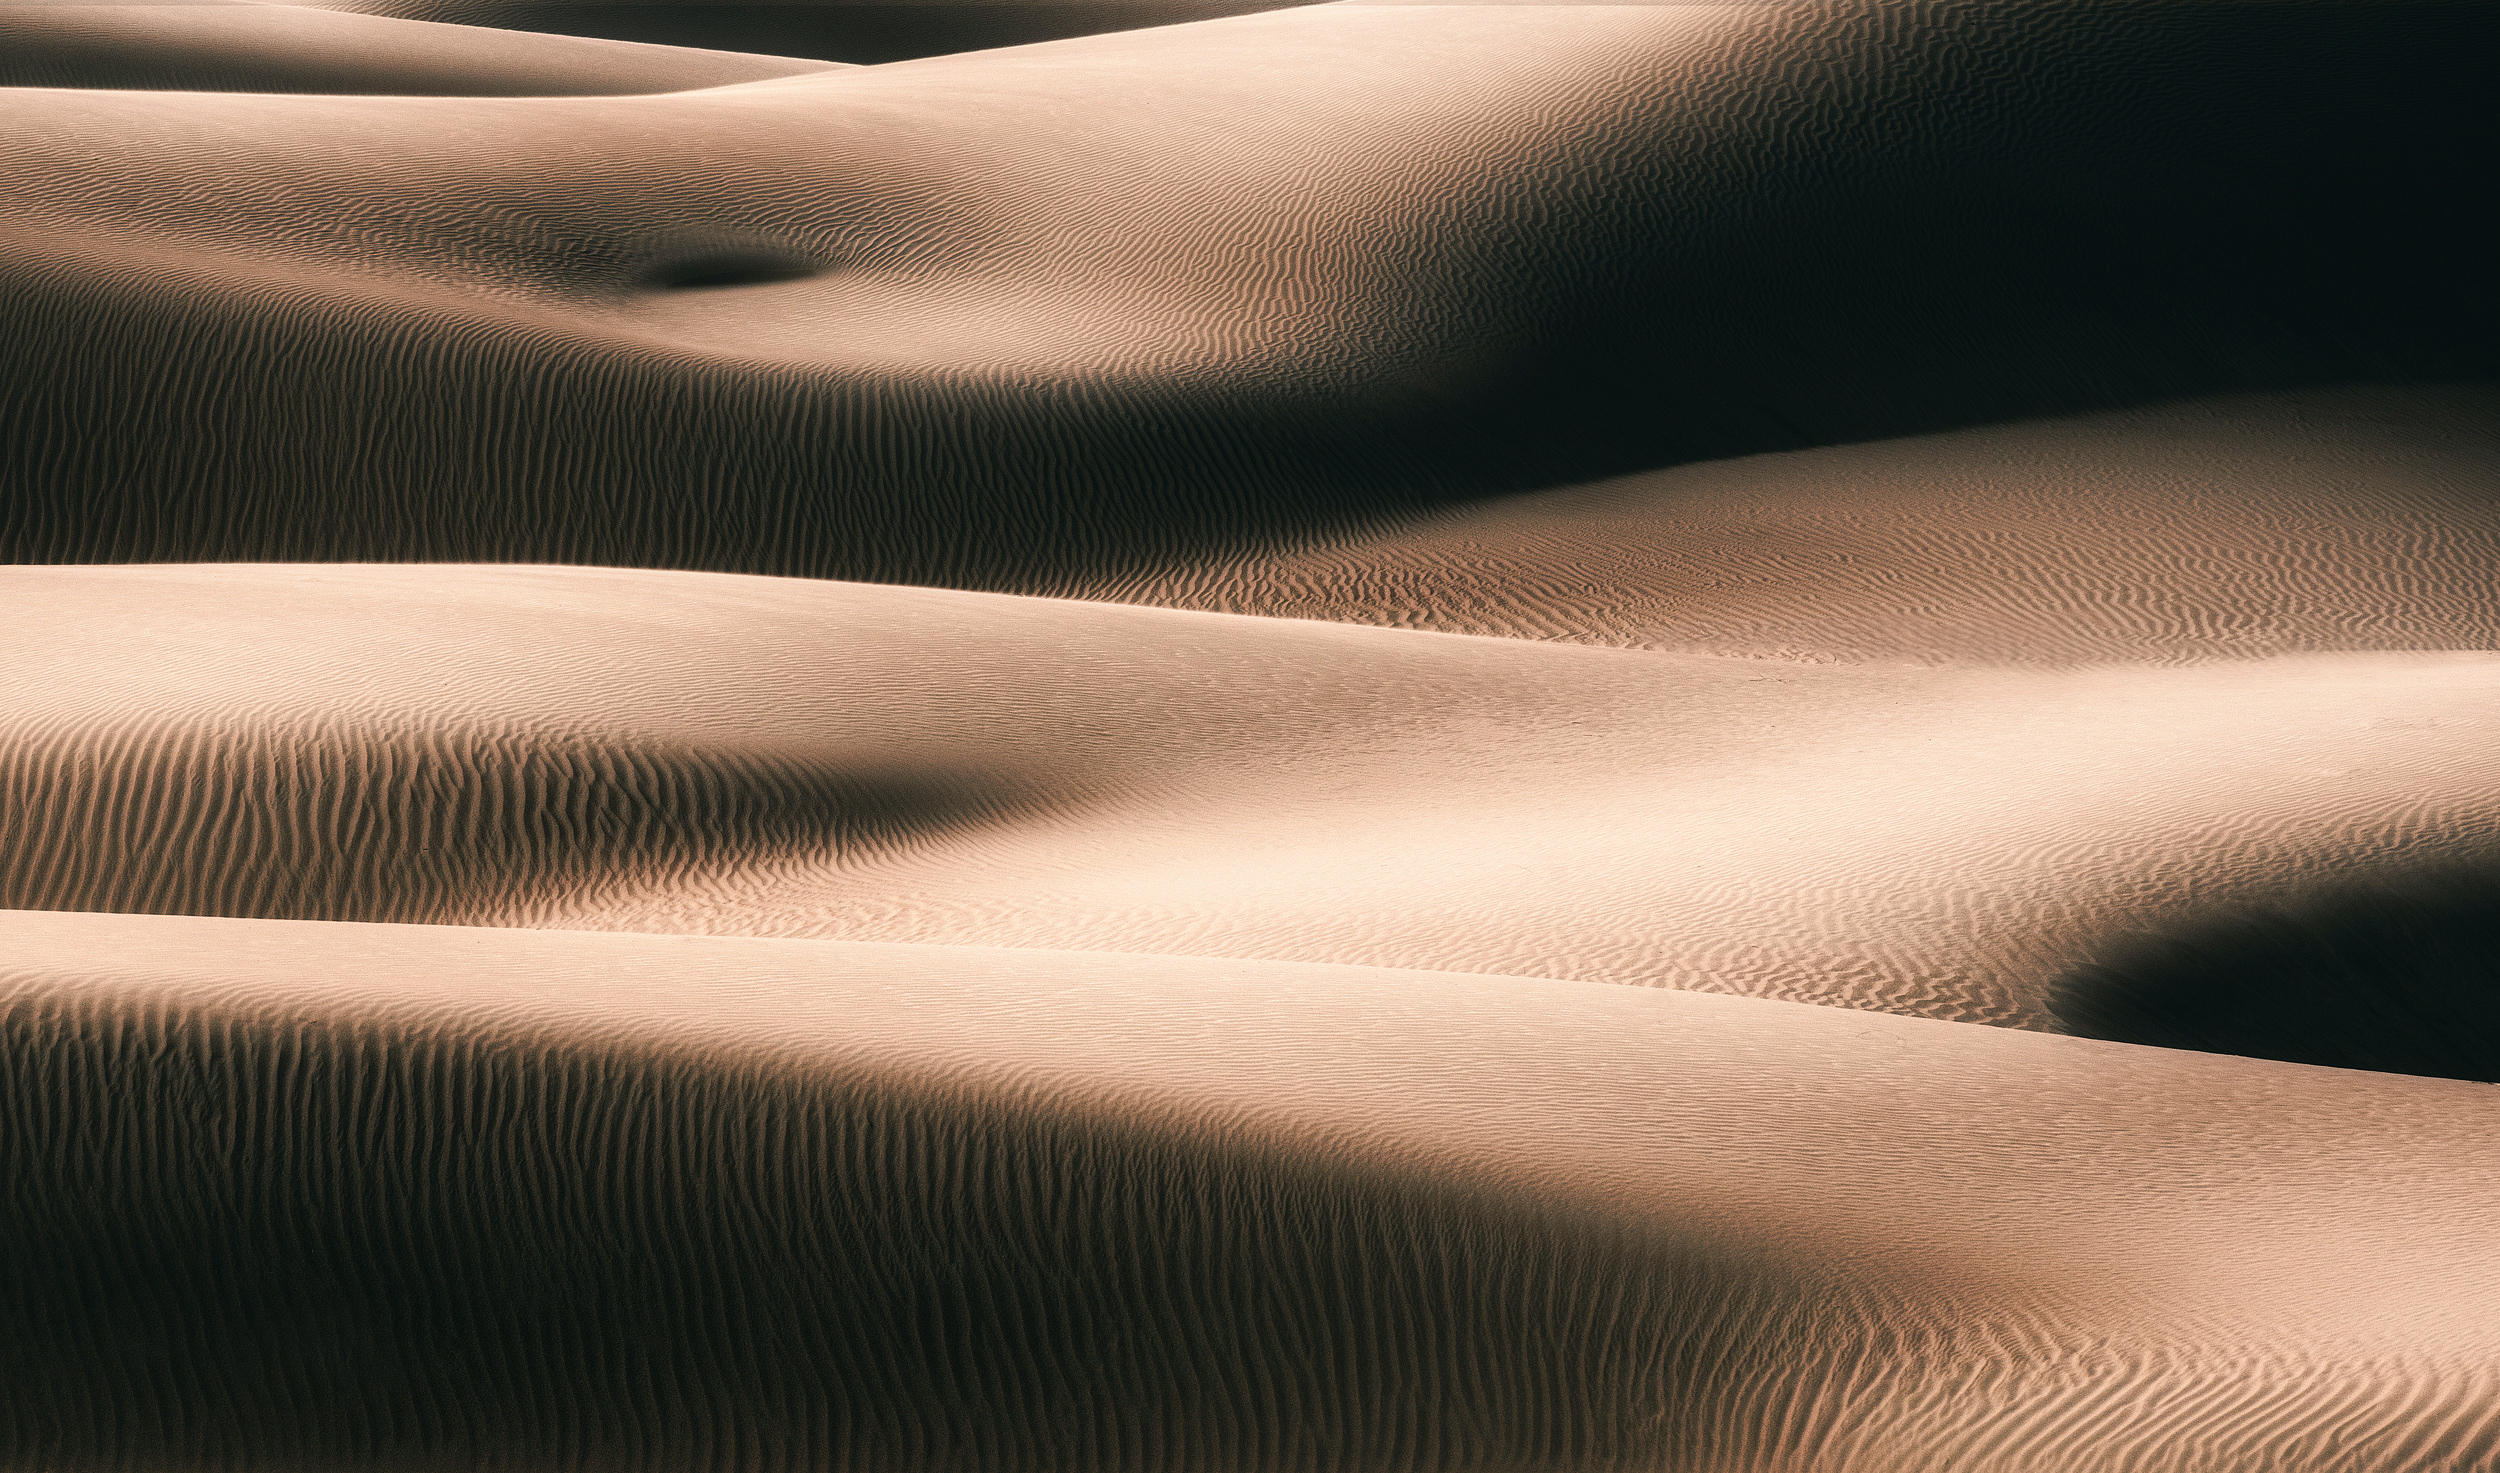 Download mobile wallpaper Nature, Sand, Desert, Earth, Dune for free.